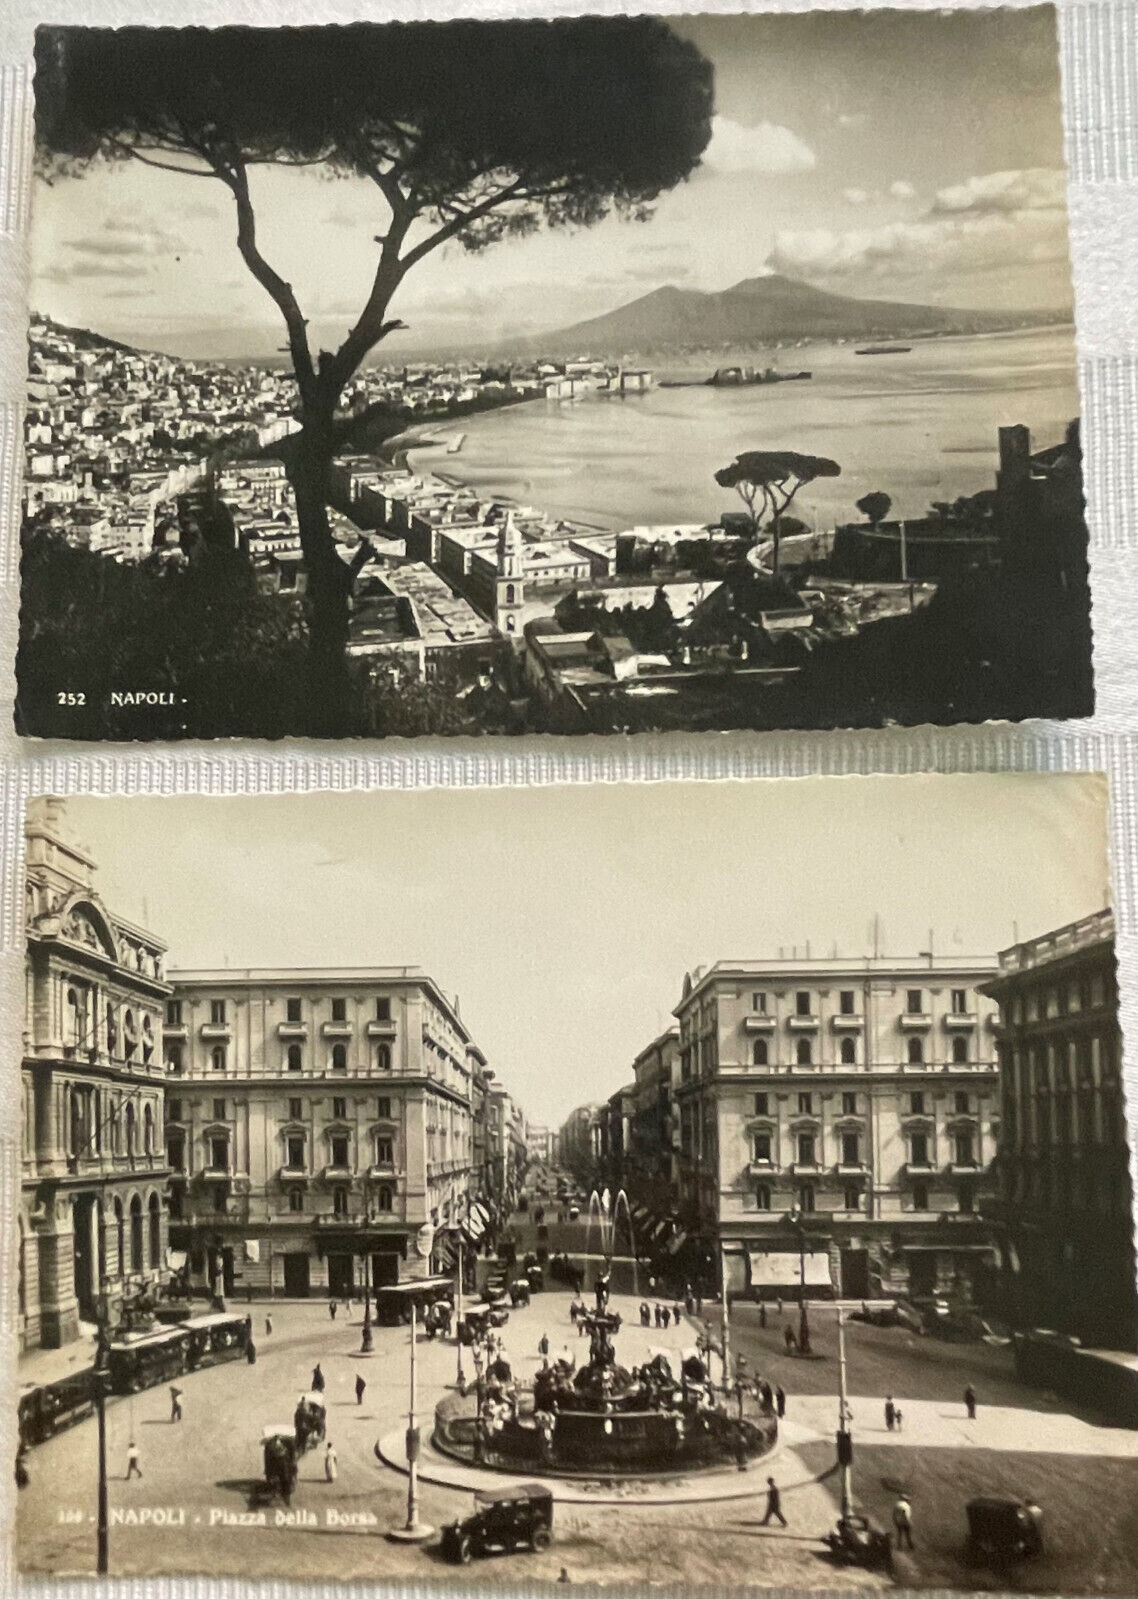 2 1940s WWII RPPC Naples Napoli Italy Bay; Piazza della Borsa 1930s car Postcard